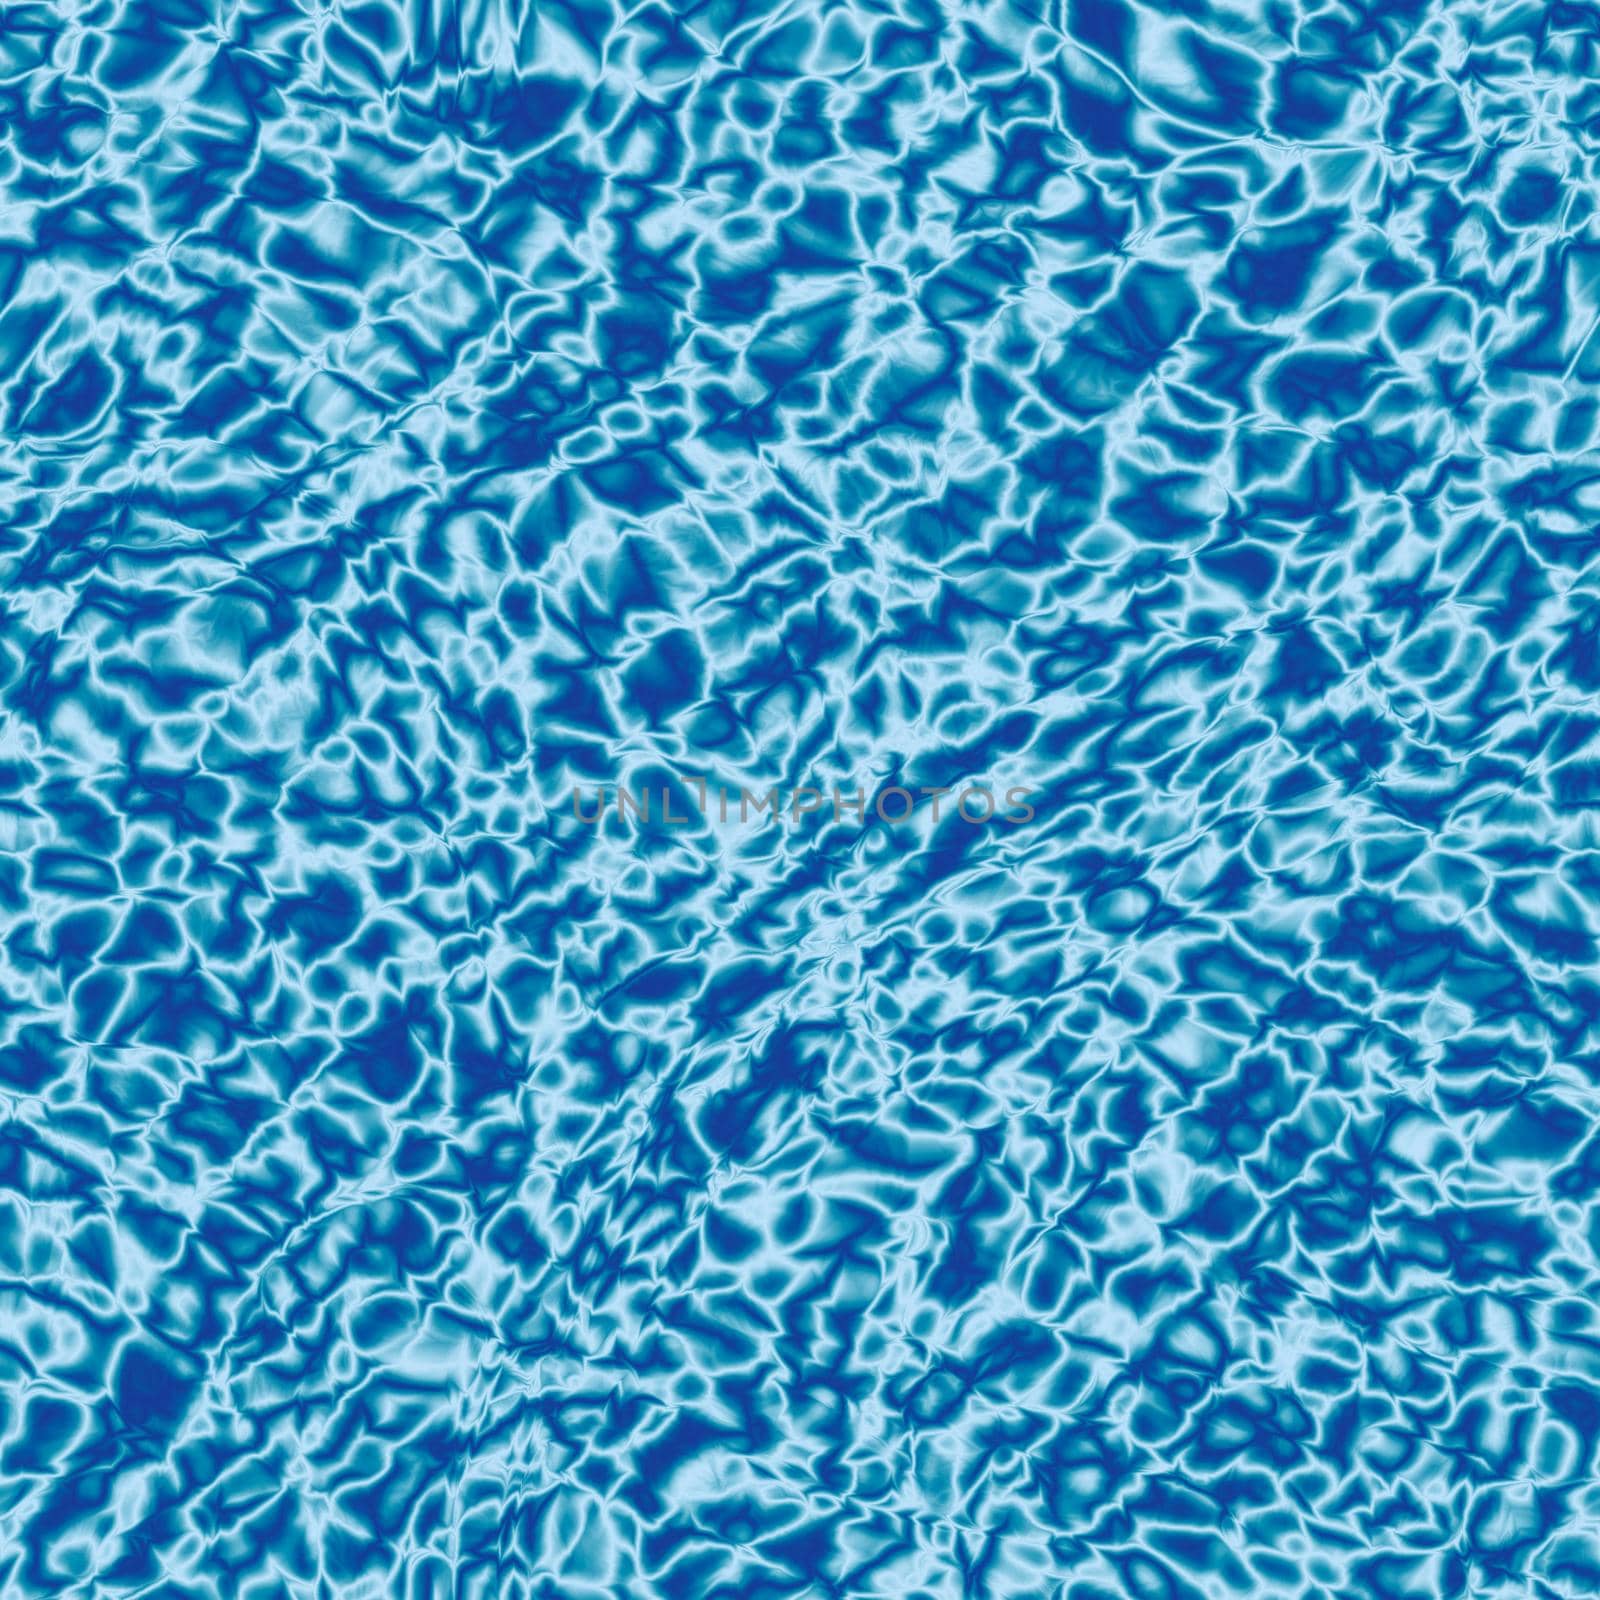 Bright shiny abstract aqua pattern